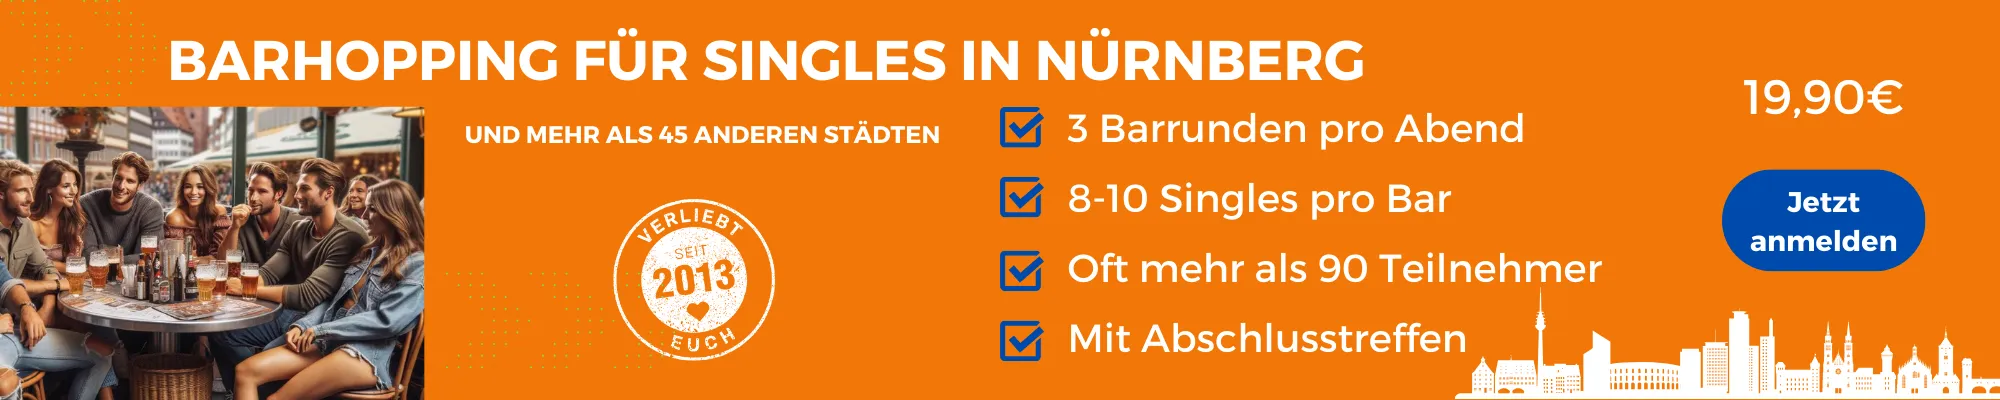 Face to Face Nürnberg, Barhopping für Singles in Nürnberg